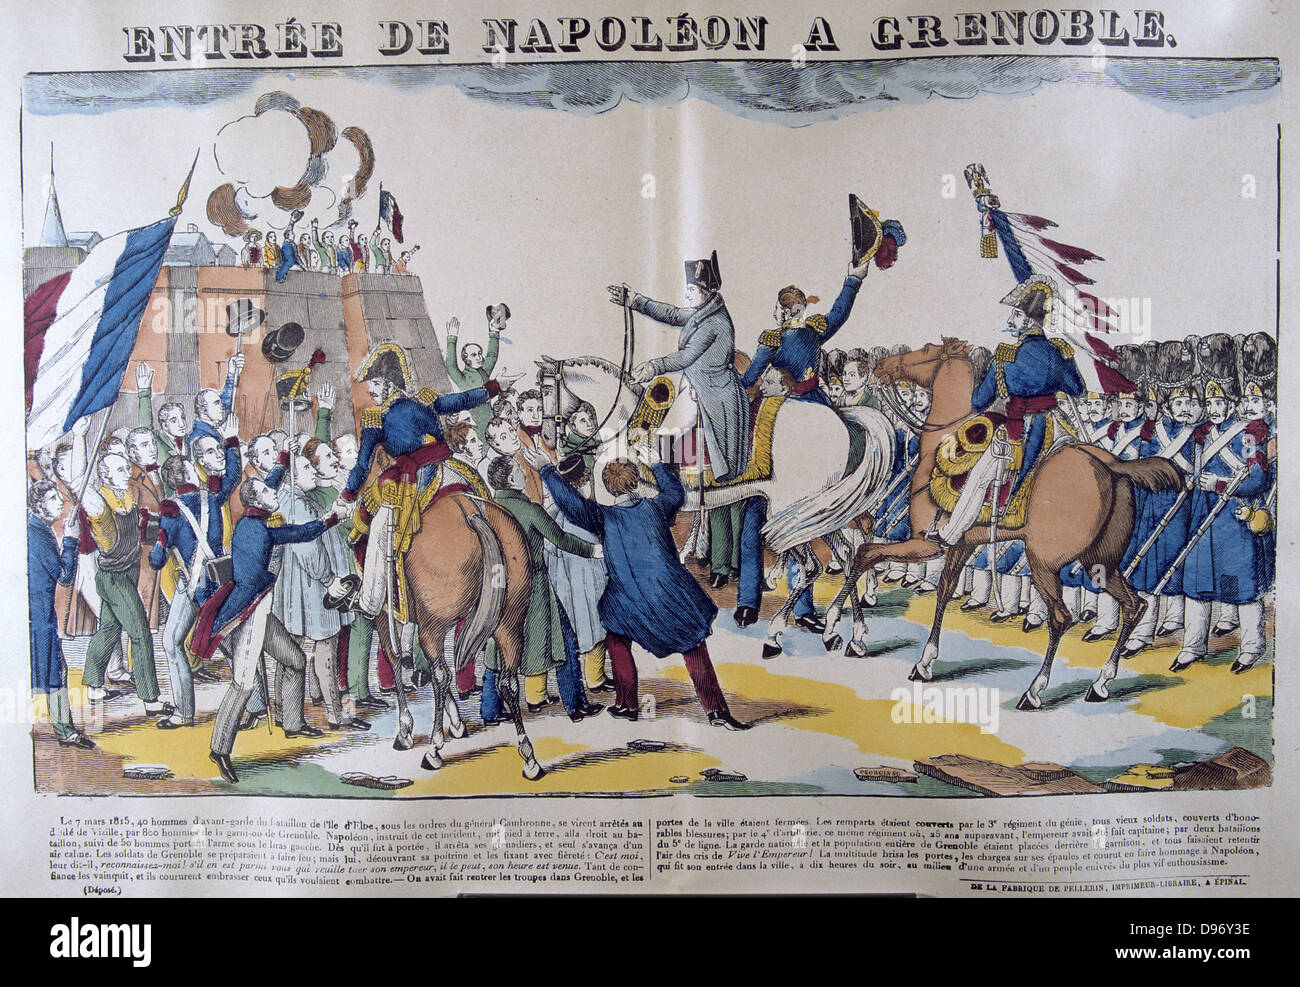 Leute gruss Napoleon I. auf seinen Eintrag in Grenoble am 7. März 1815 nach seiner Rückkehr aus dem Exil auf der Insel Elba. 19. französischen beliebten Handkolorierter Holzschnitt. Stockfoto